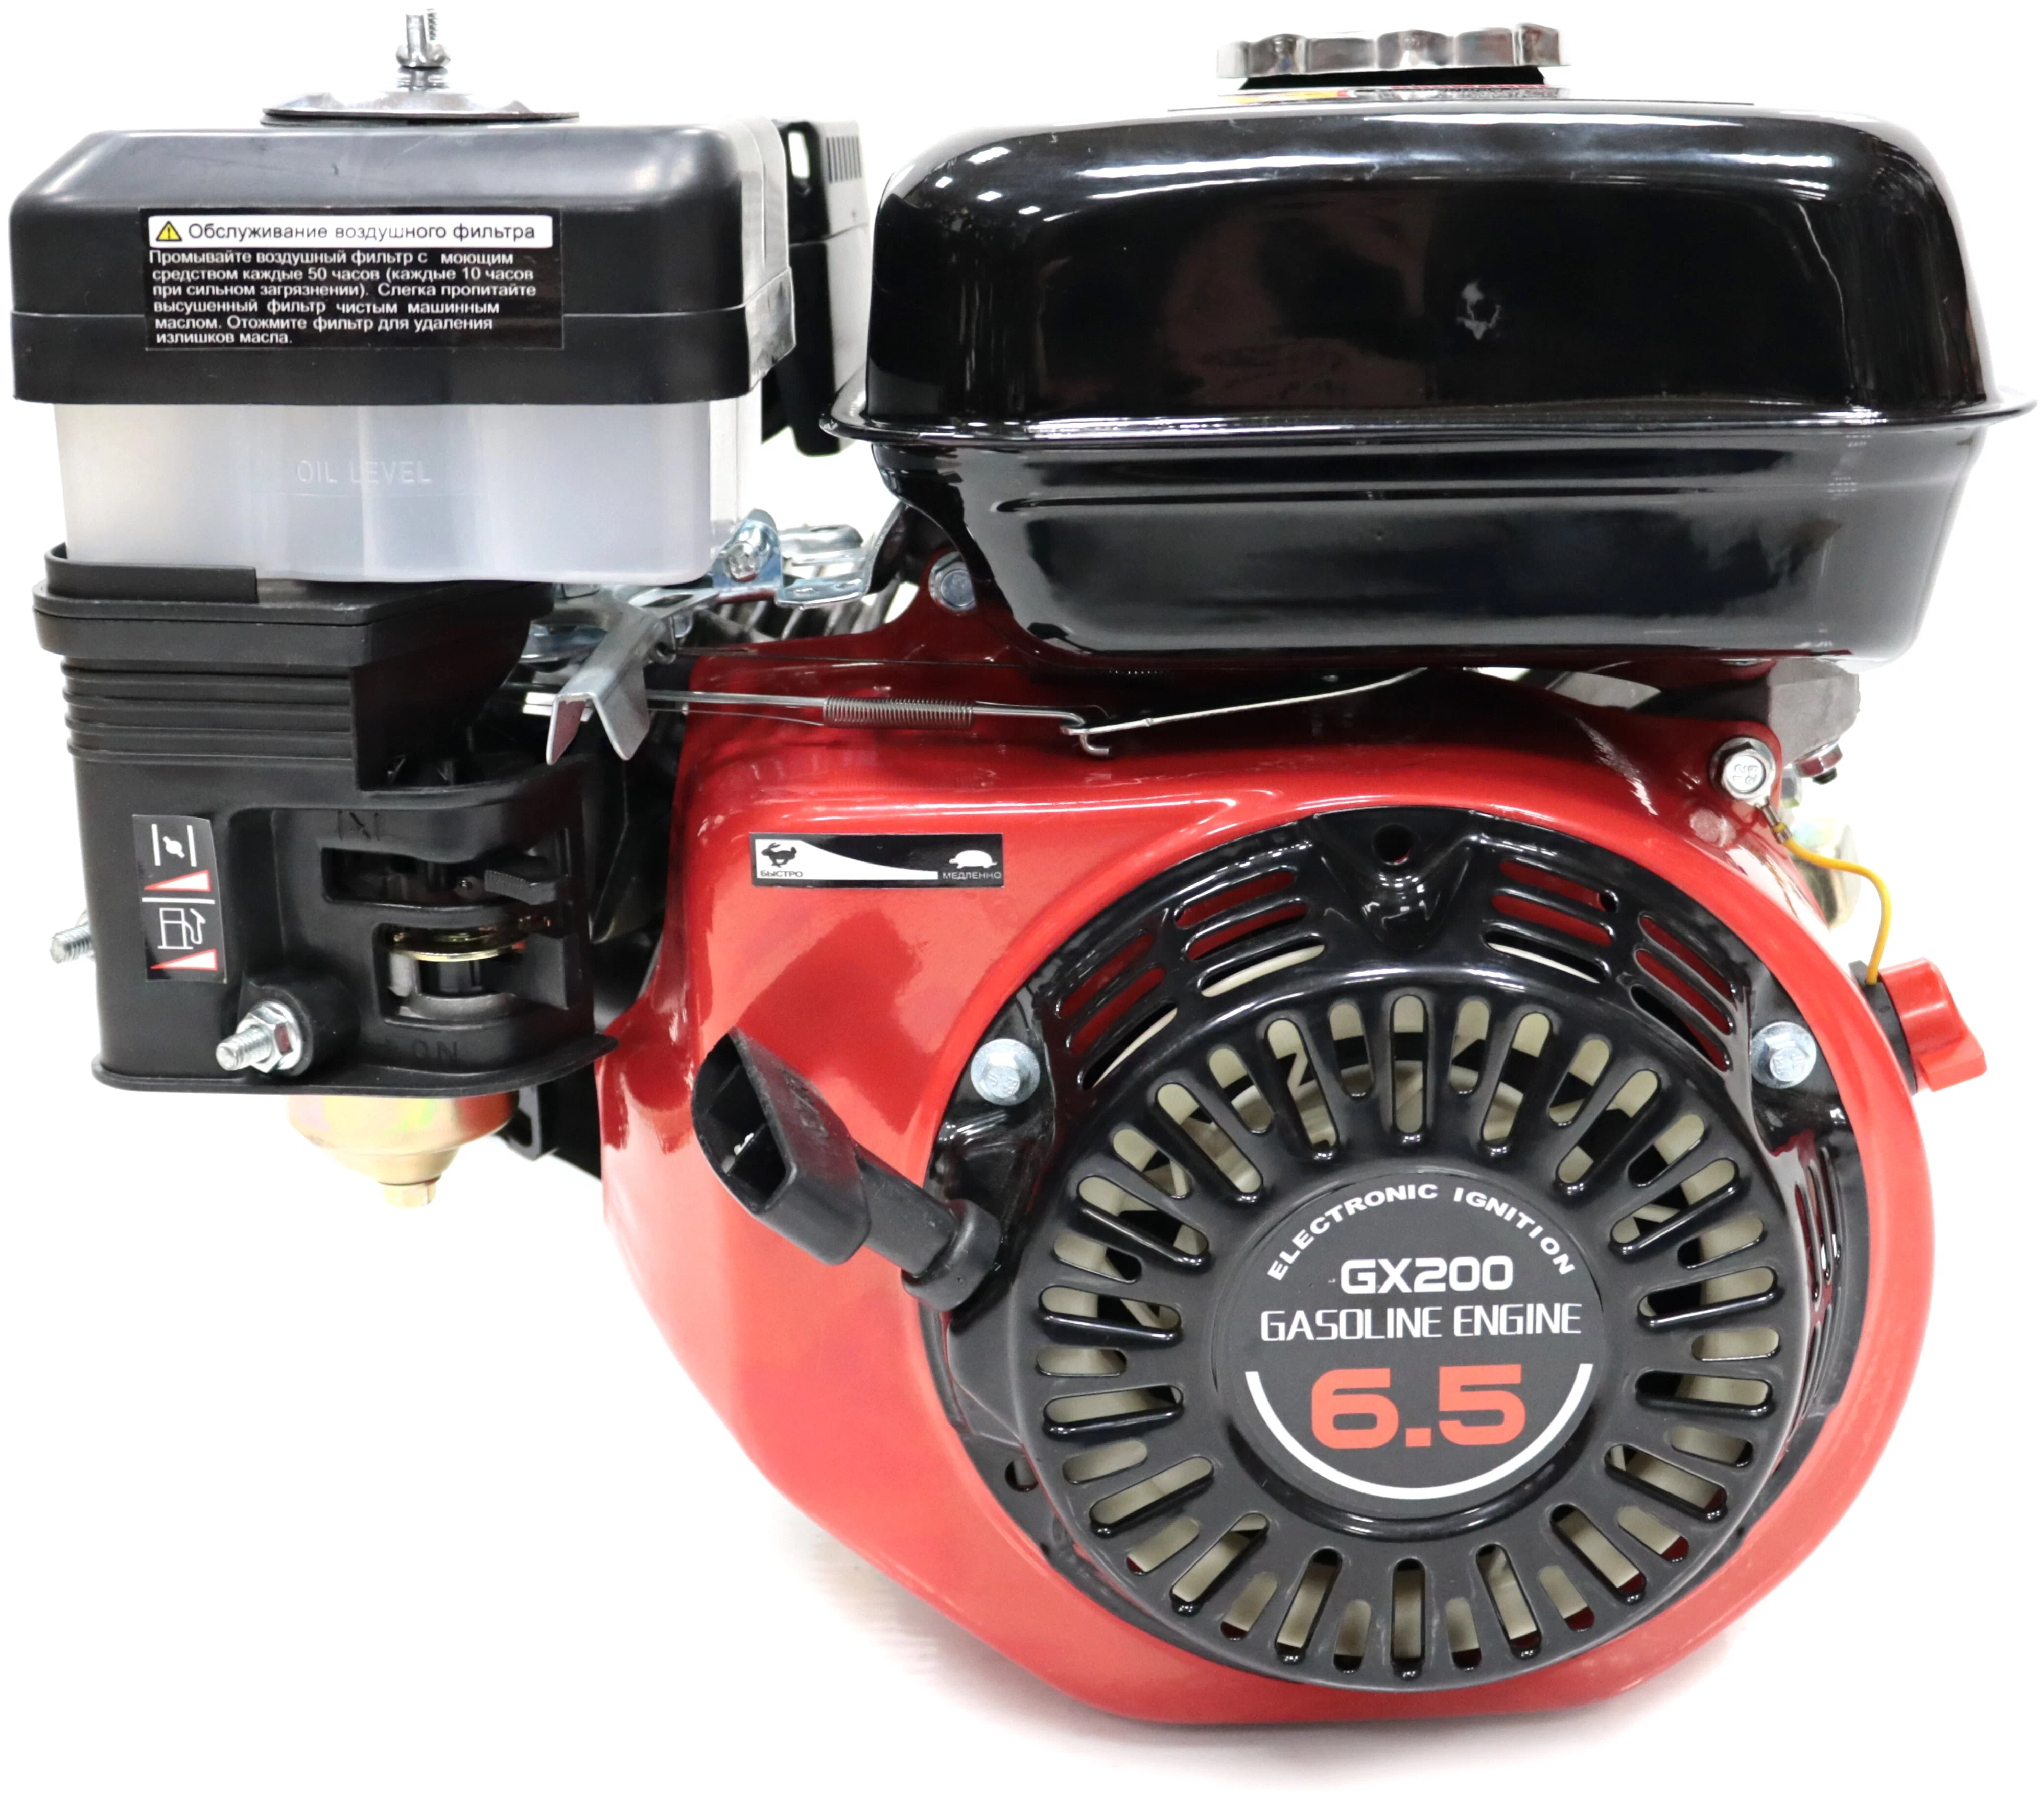 Двигатель "Krotof"GX200(6,5л.с,бензиновый вал,19мм,шкив)"